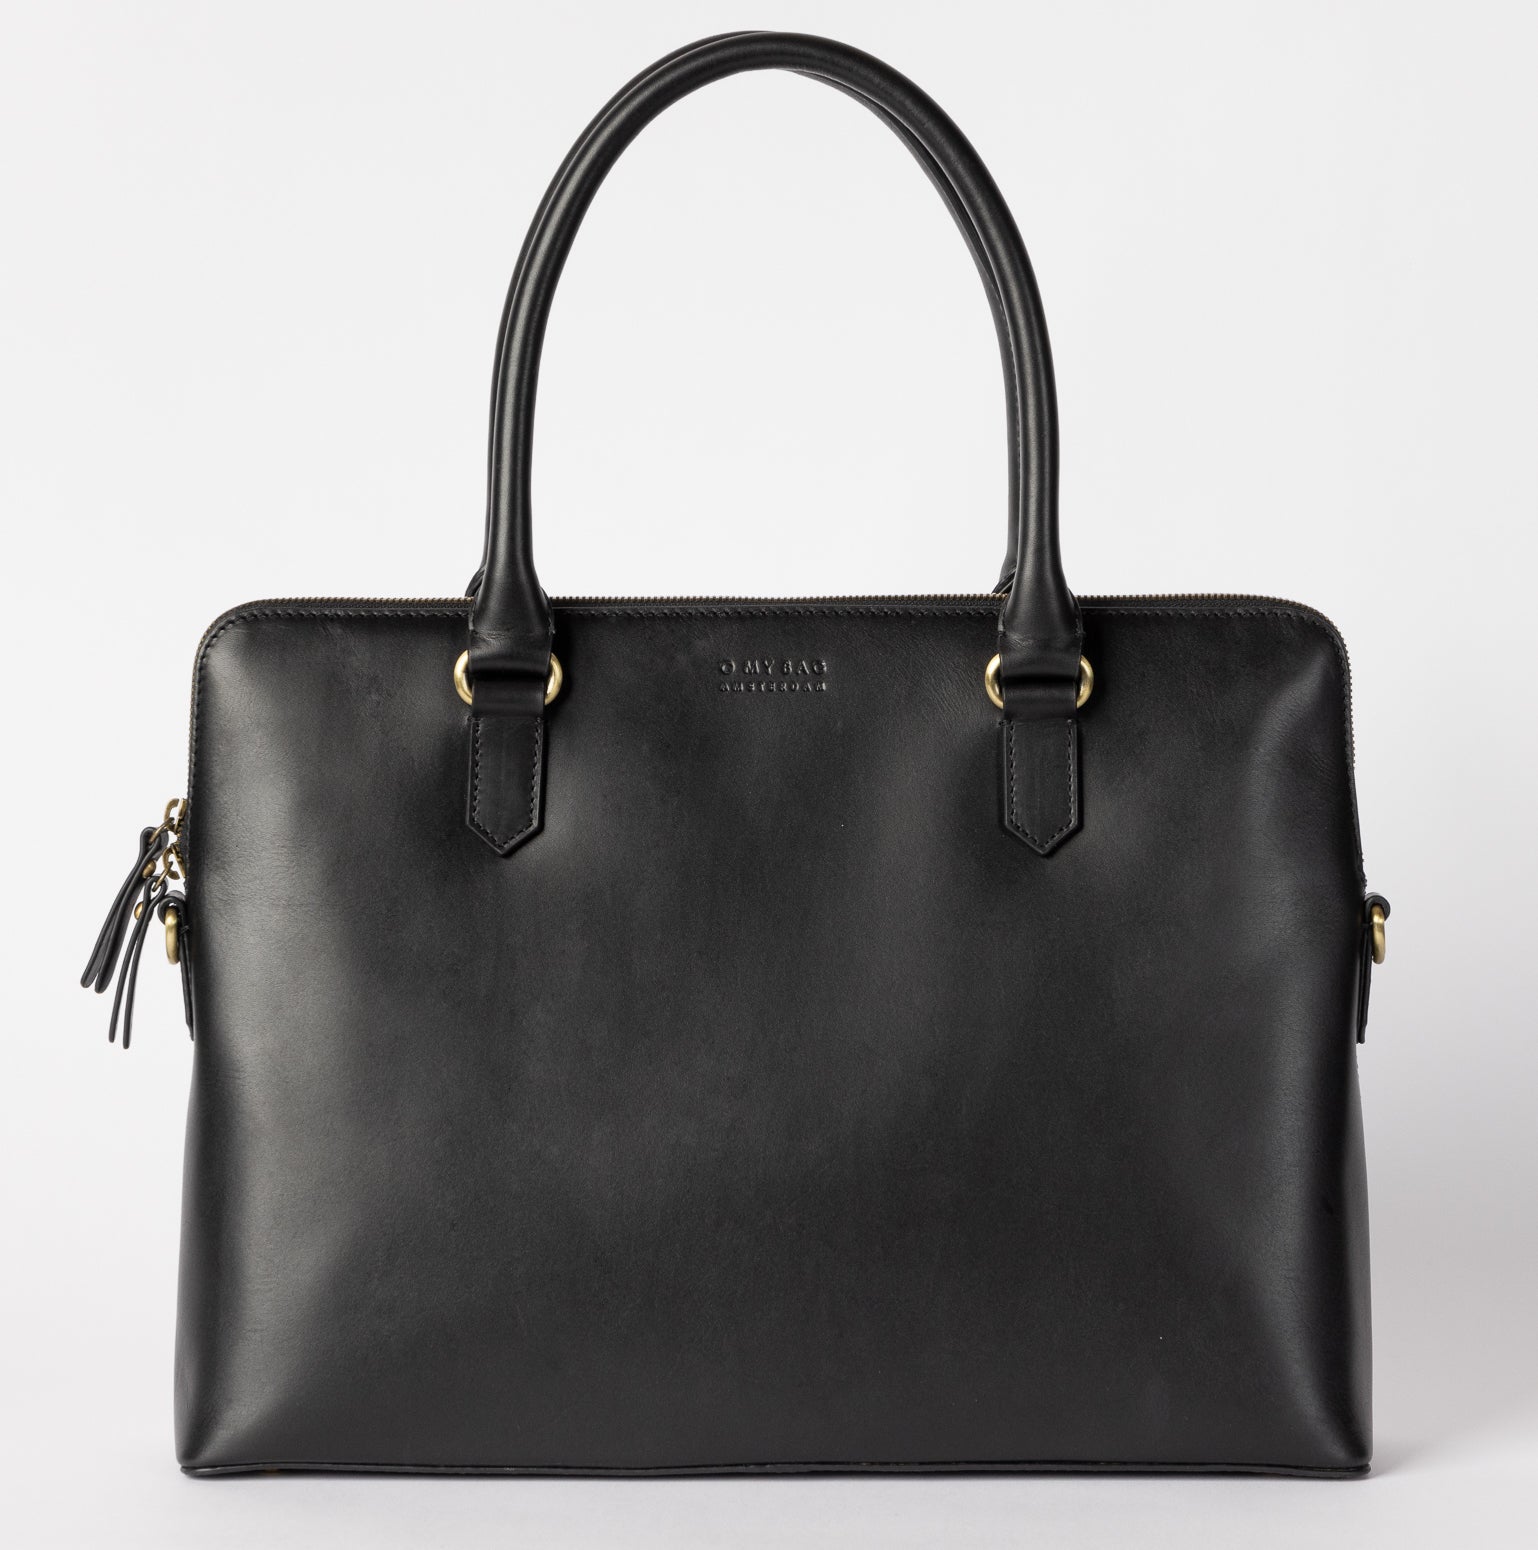 O My Bag Hayden Leather Bag in Black